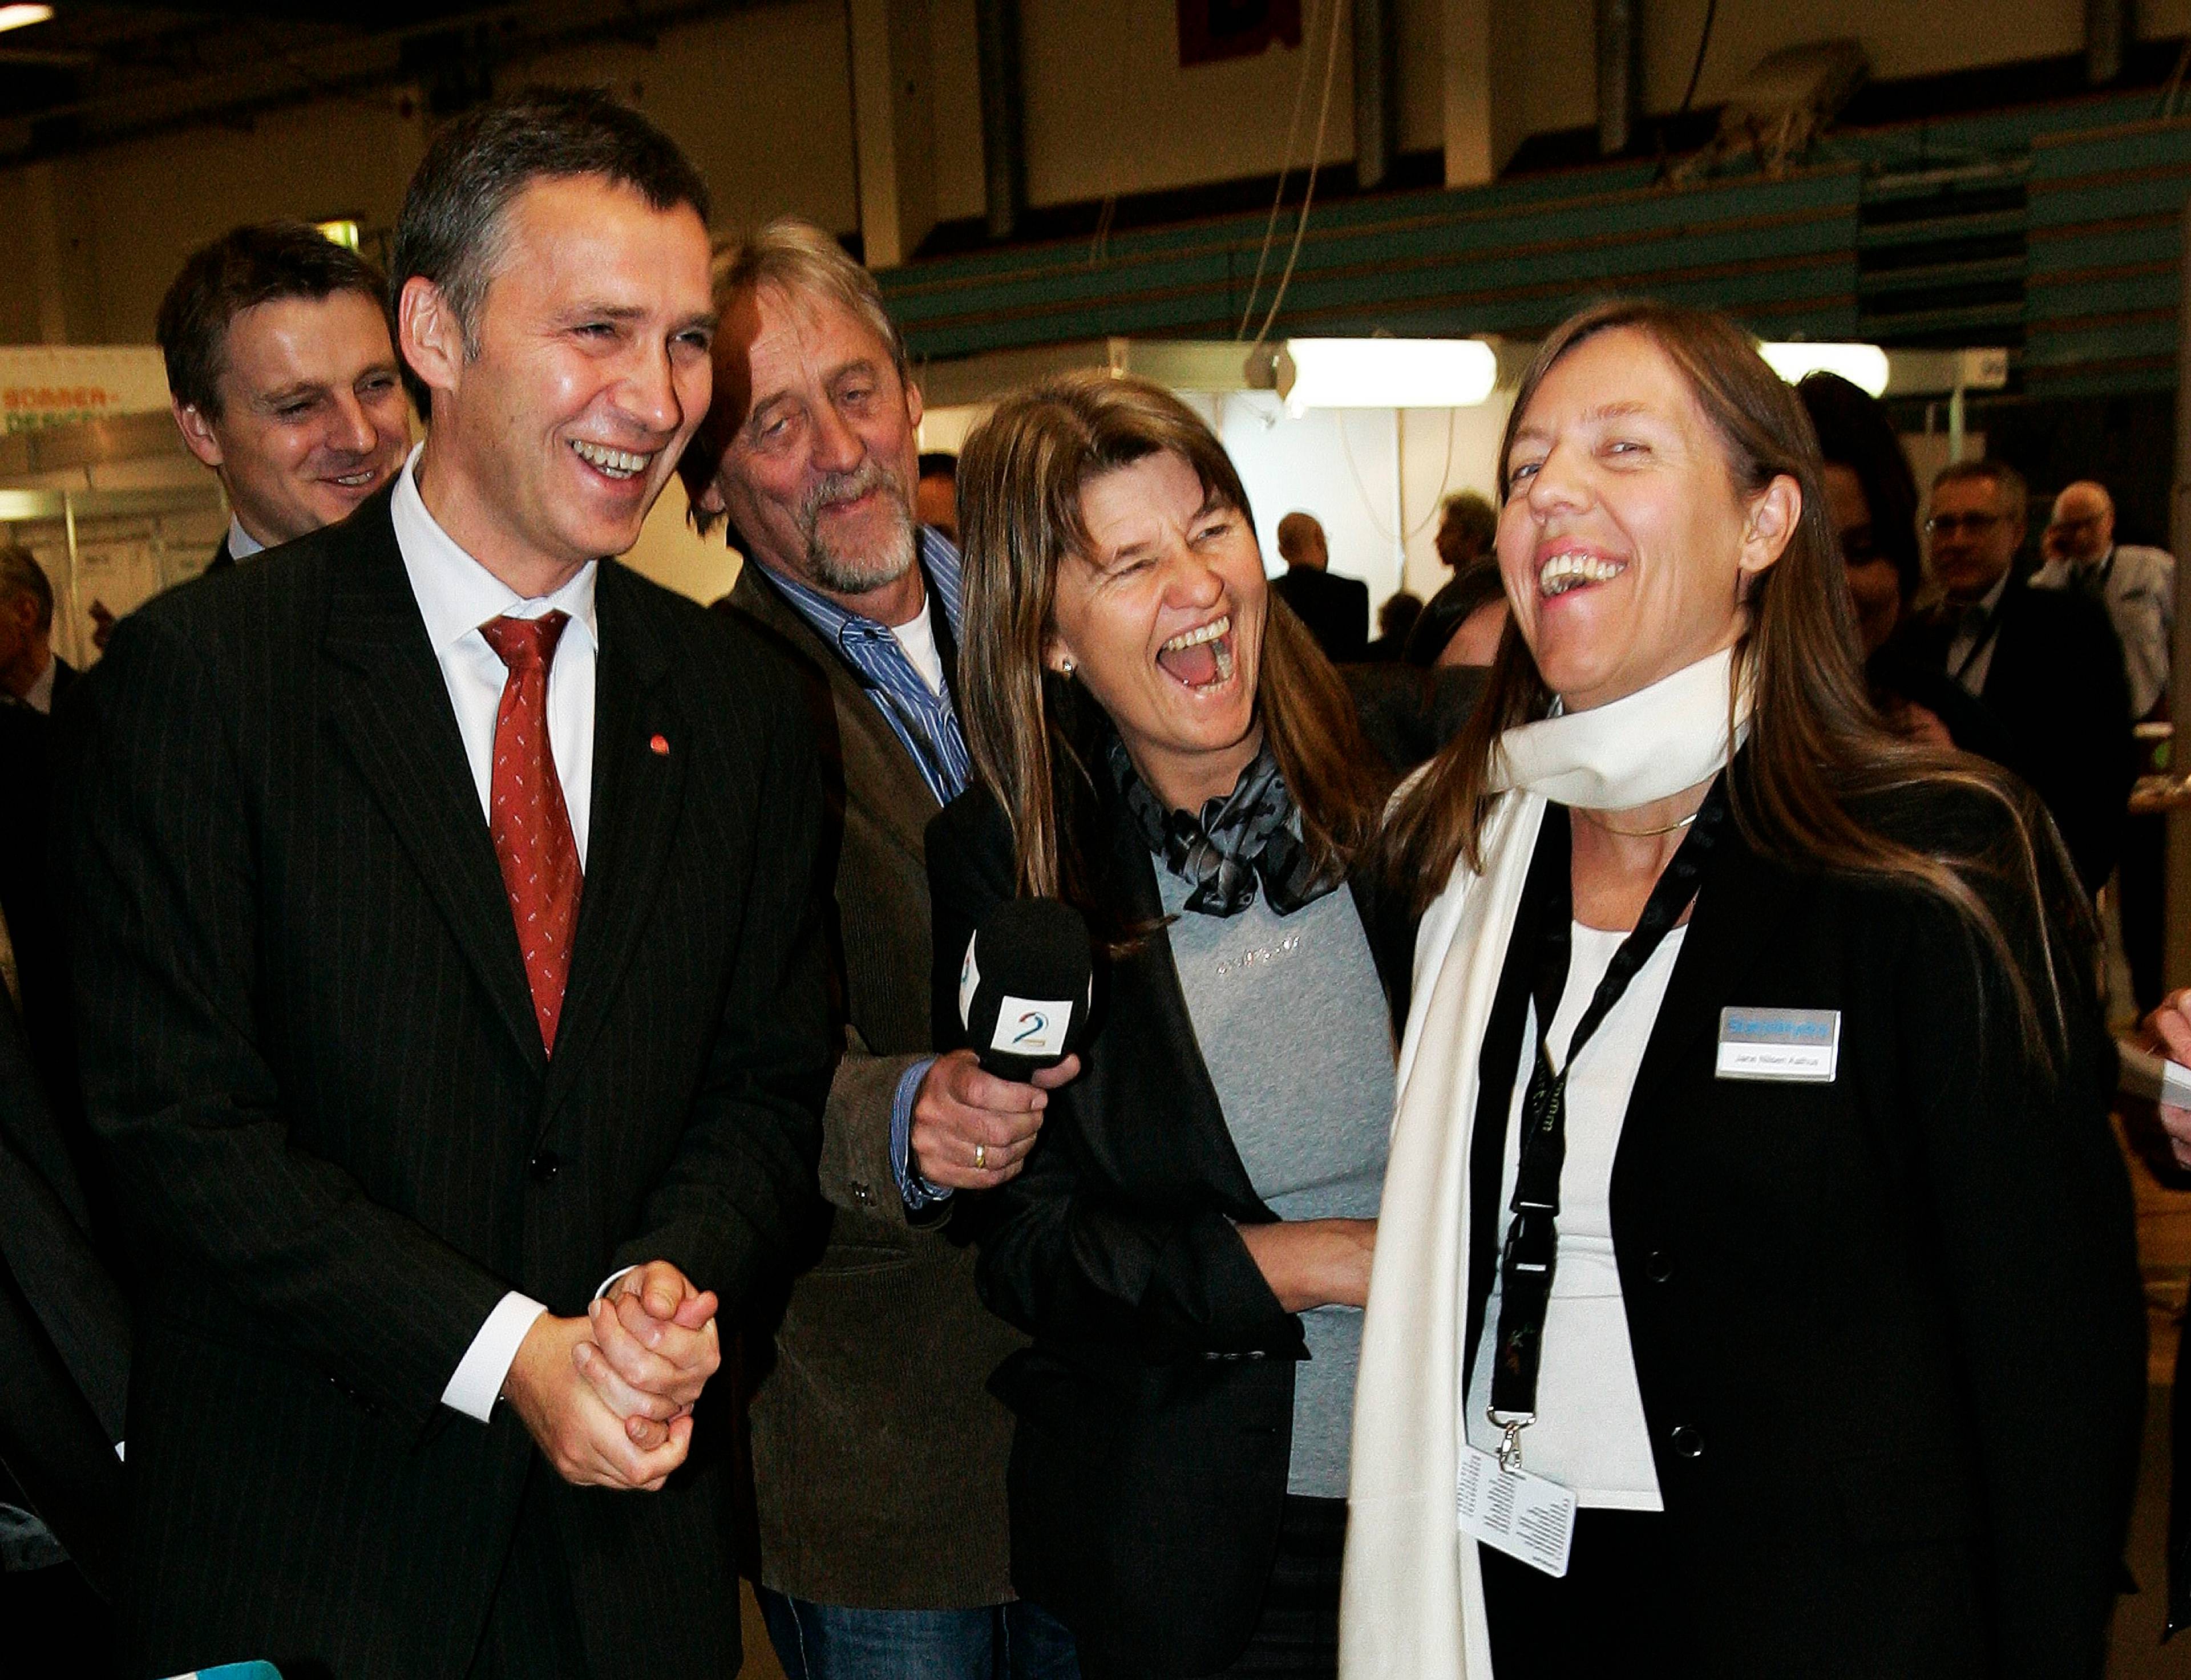 Det var god stemning i Trondheim da Øvrum og Jane Nilsen Aalhus var vertskap for daværende statsminister Jens Stoltenberg under en teknologikonferanse i 2007.